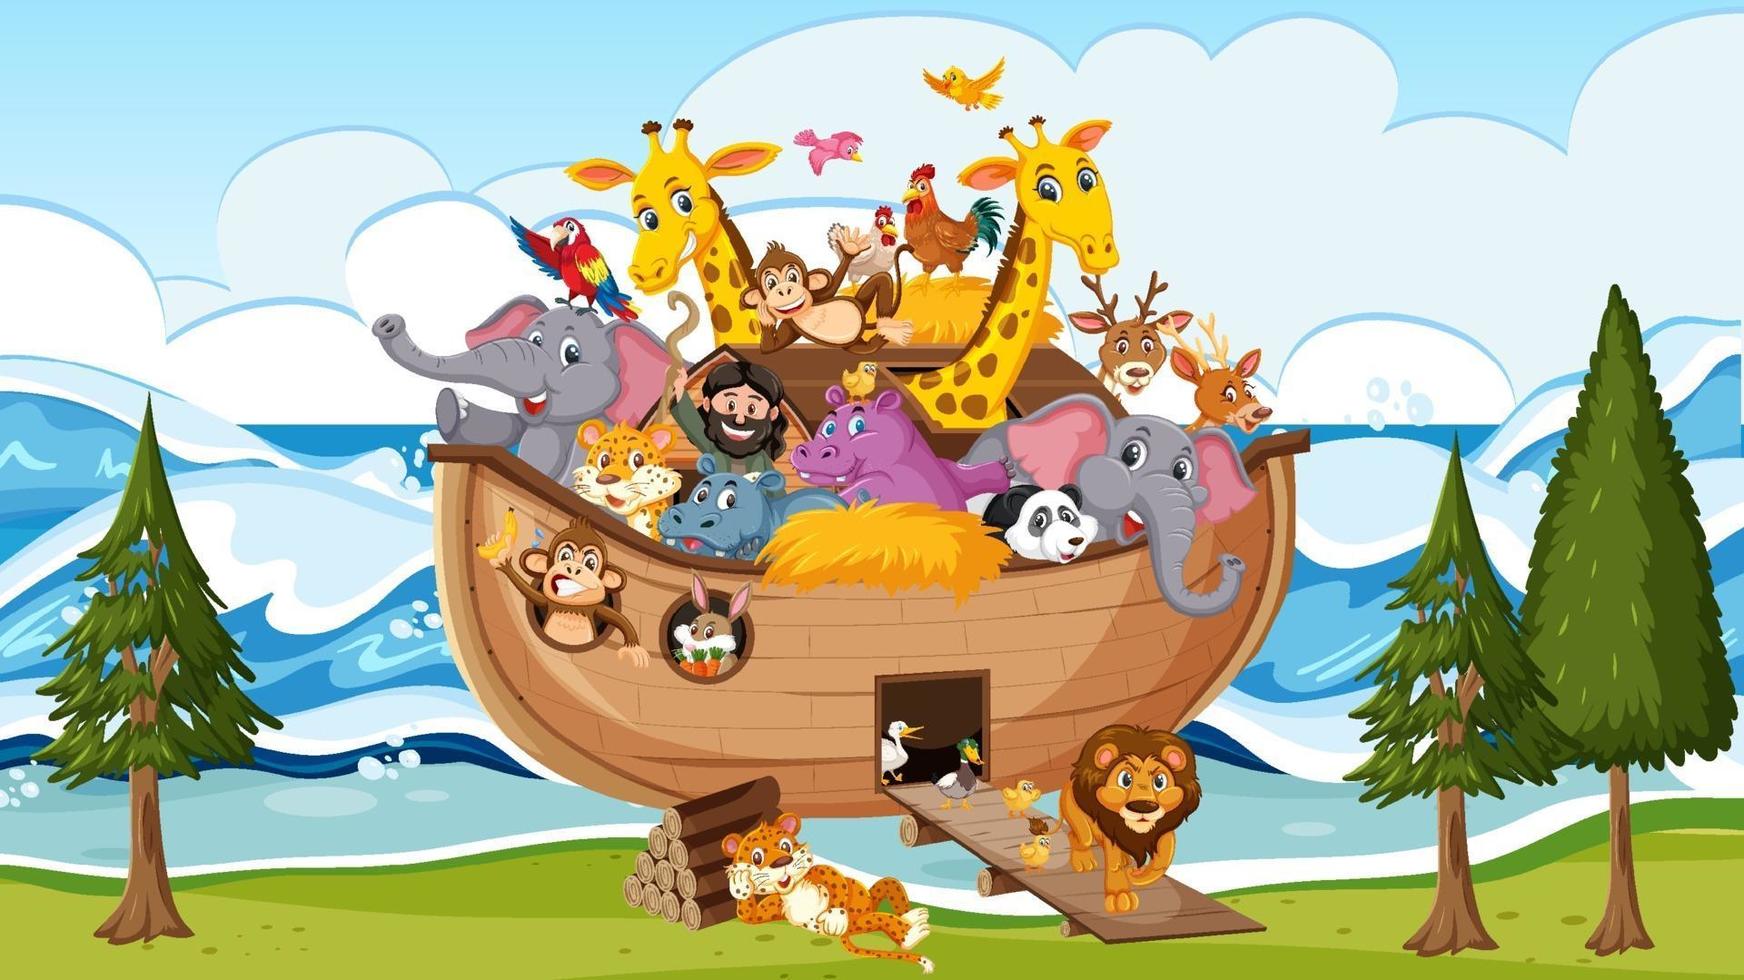 animais na arca de noé flutuando na cena do oceano vetor